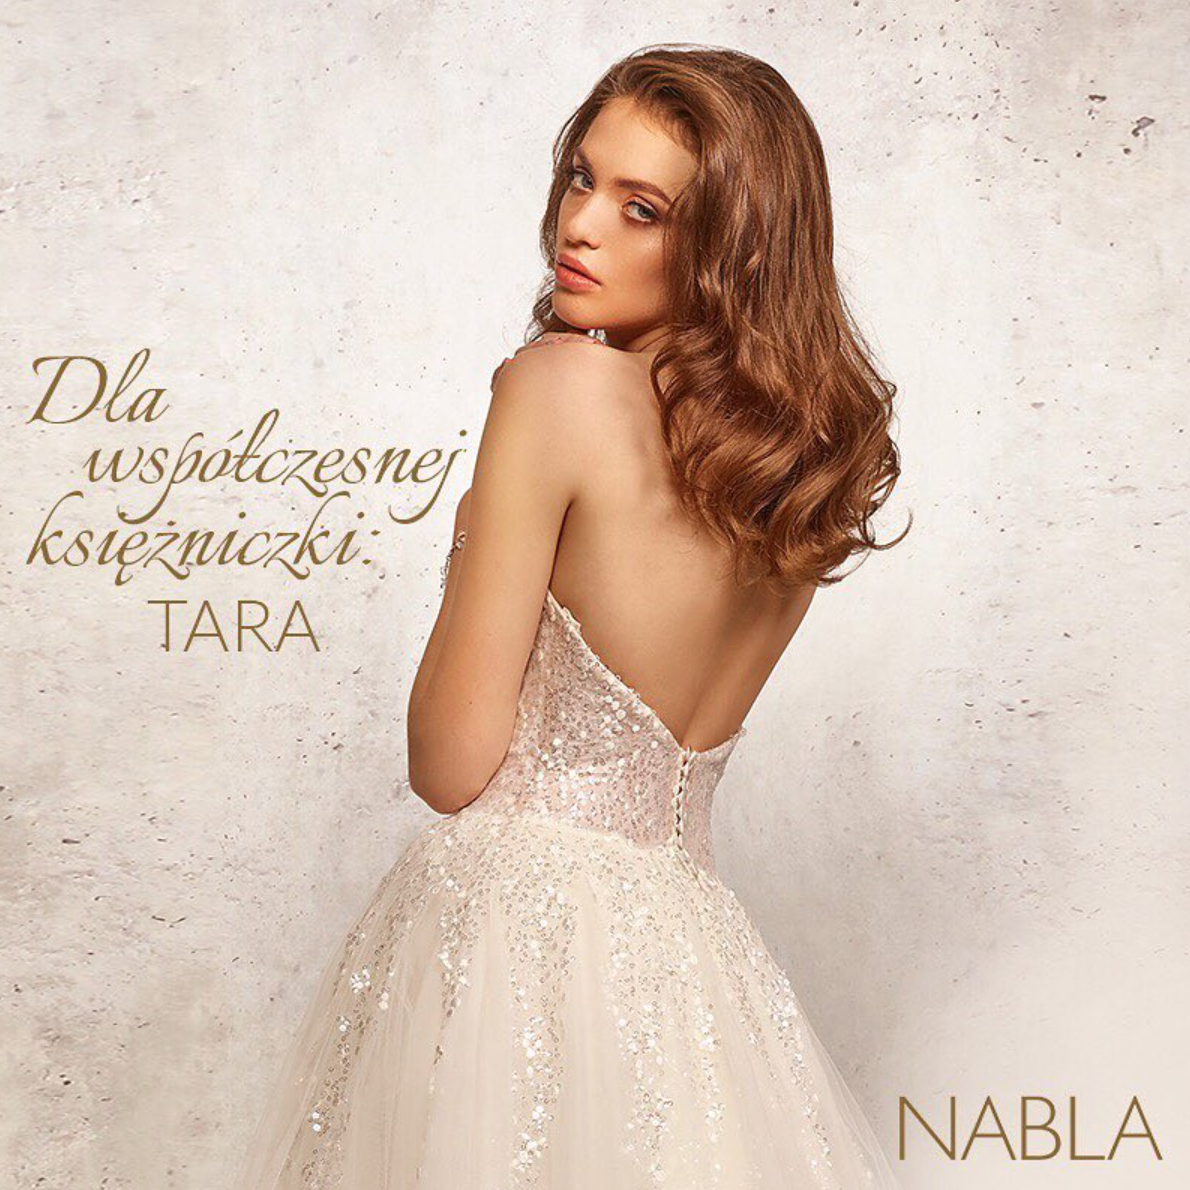 Banner Nabla – Instagram